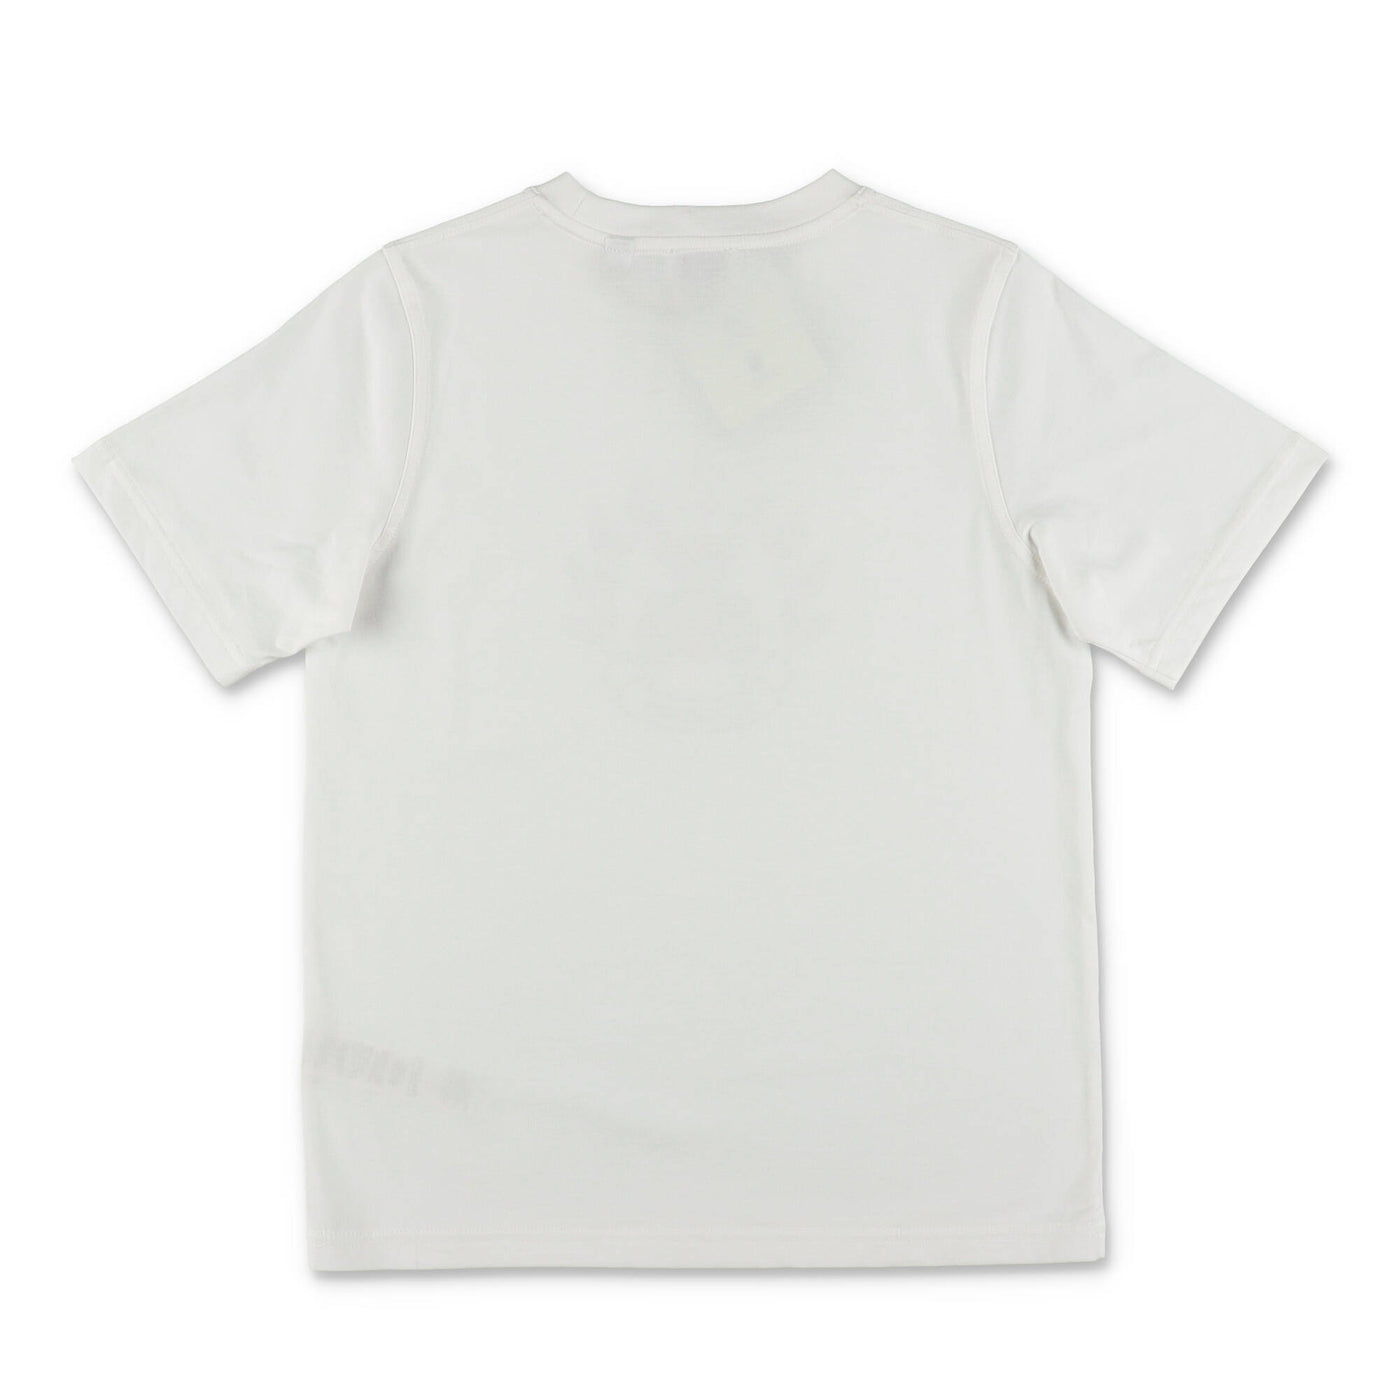 CEDAR white cotton jersey boy BURBERRY t-shirt